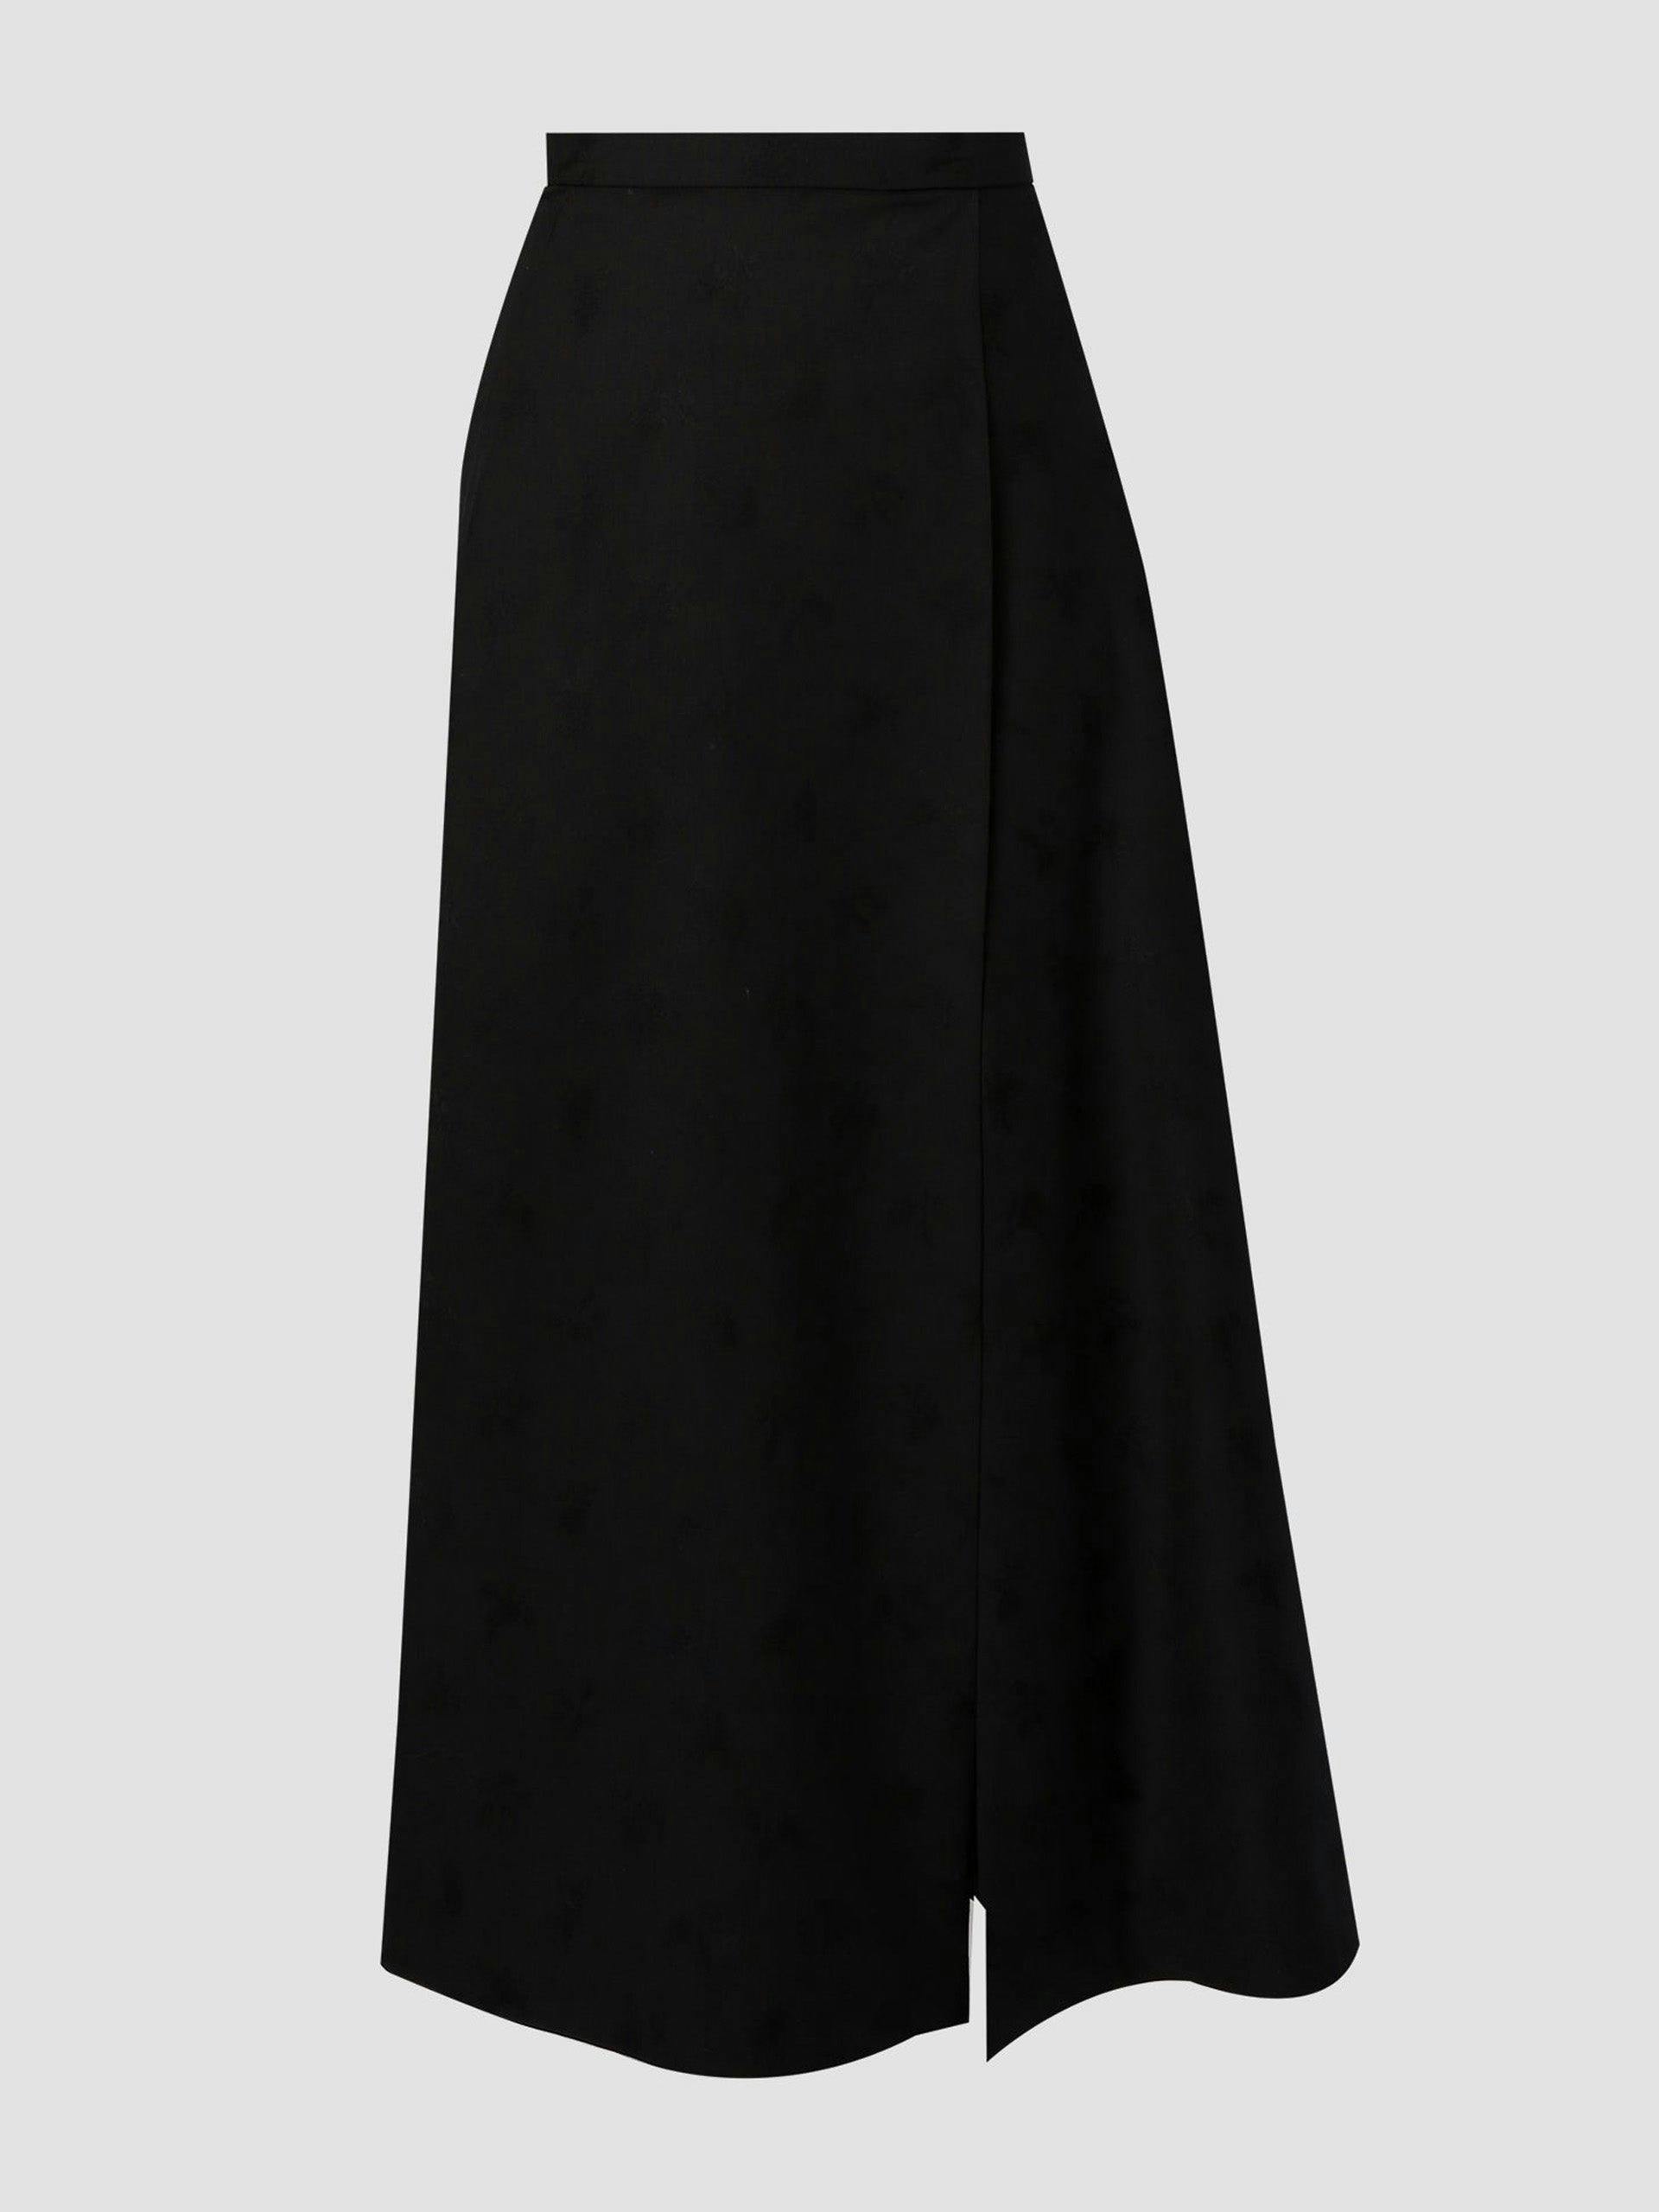 Long black skirt with slit